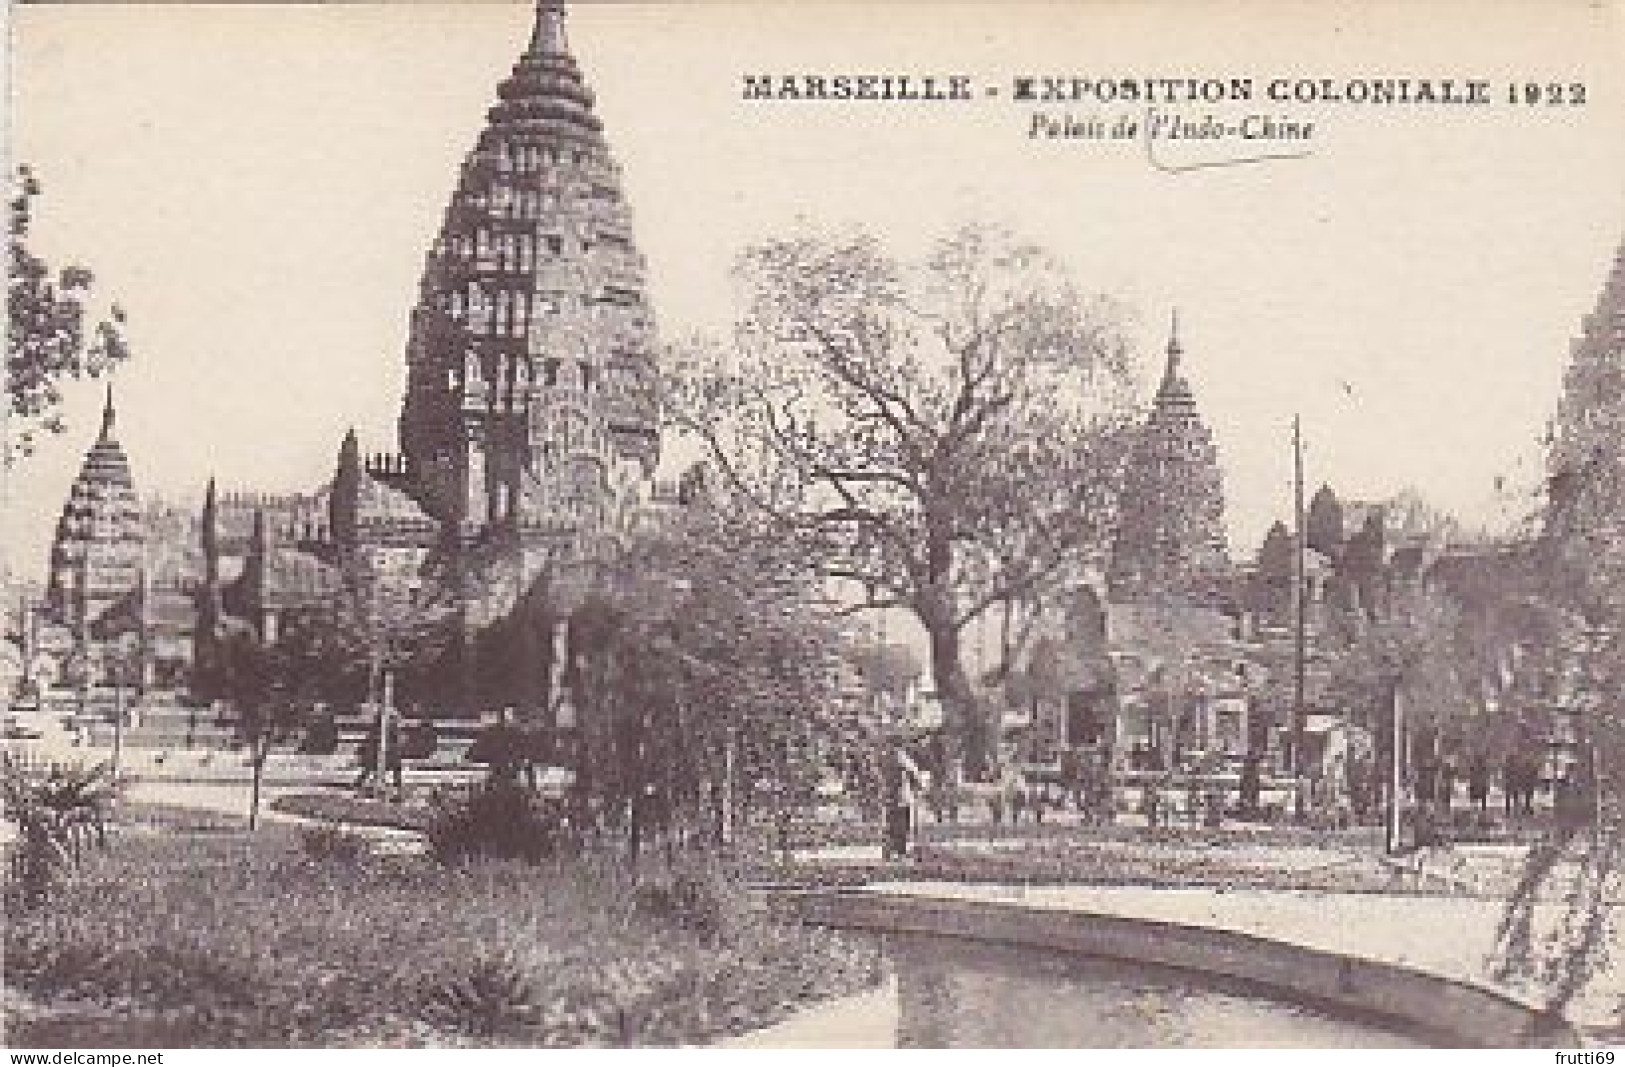 AK 216701 FRANCE - Marseille - Expoition Coloniale 1922 - Palais De L'Indo-Chine - Exposiciones Coloniales 1906 - 1922